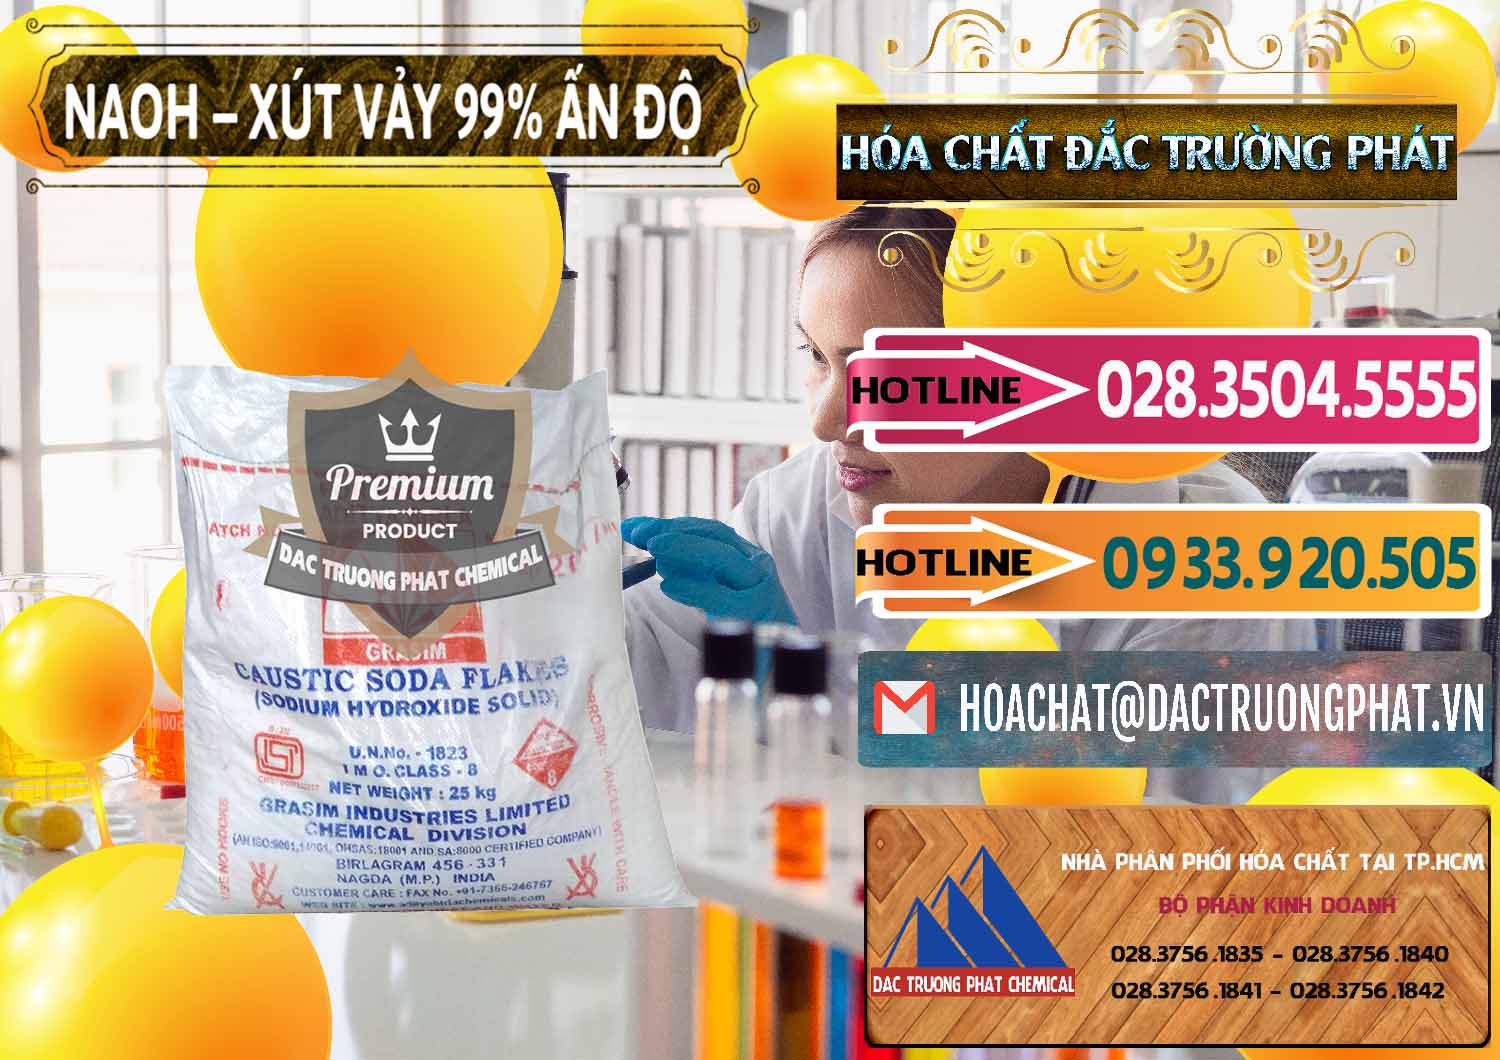 Nơi chuyên bán _ phân phối Xút Vảy - NaOH Vảy 99% Aditya Birla Grasim Ấn Độ India - 0171 - Cty chuyên bán _ cung cấp hóa chất tại TP.HCM - dactruongphat.vn